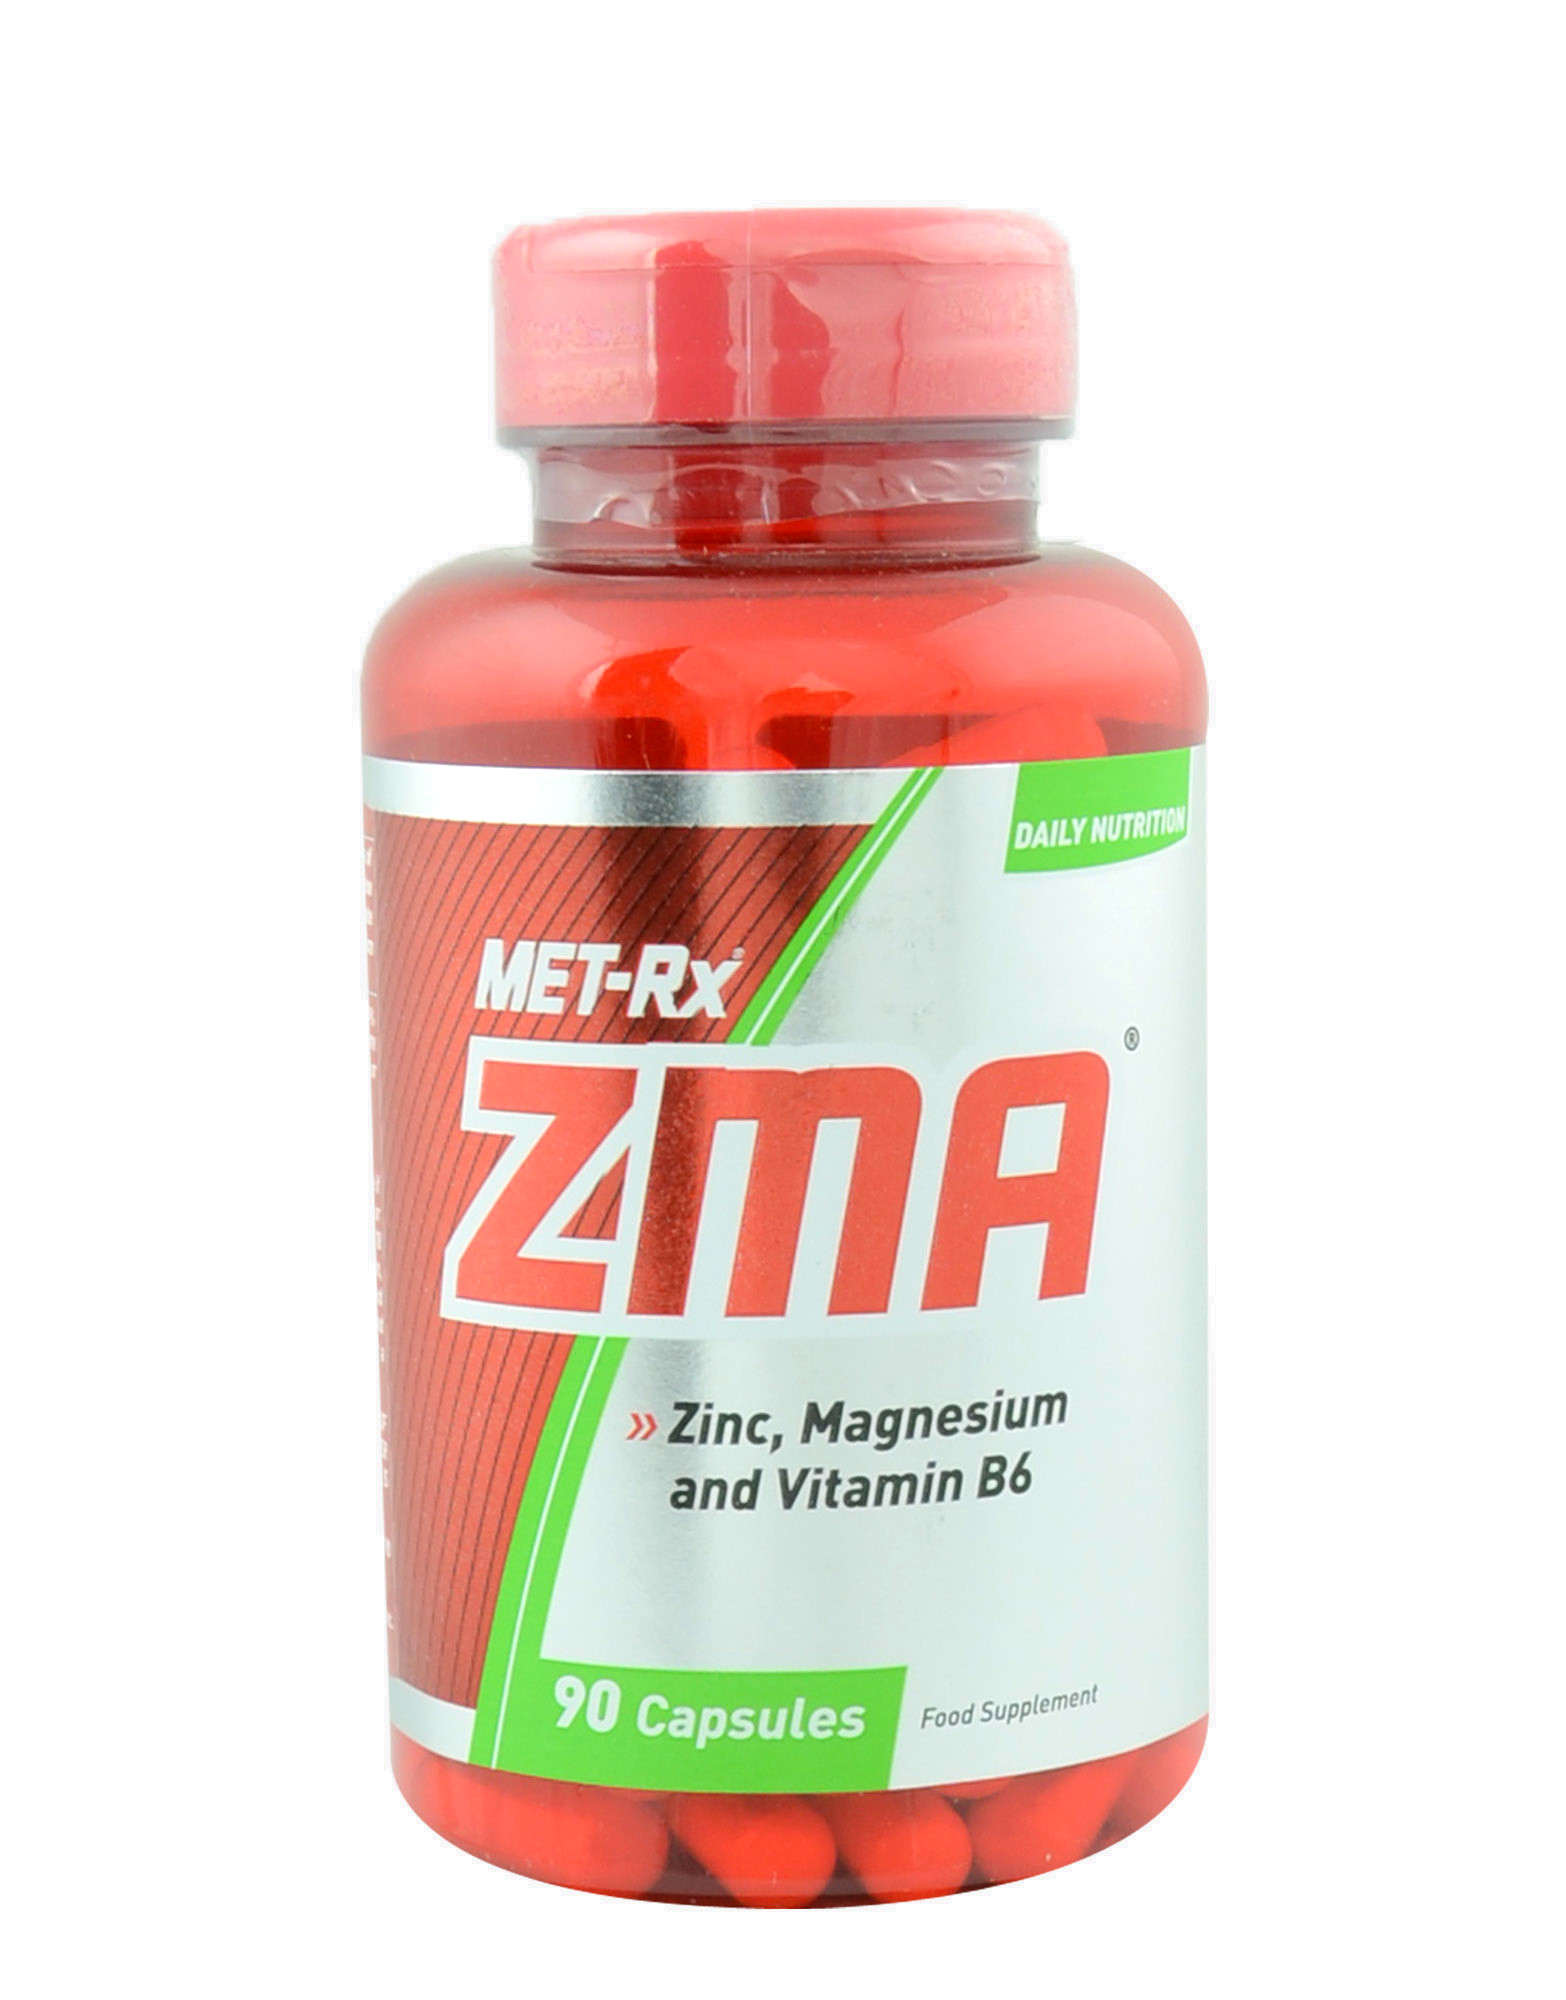 Zma b6. ZMA met RX. ZMA капсулы. Met-RX витамины. Тестобустер зма.